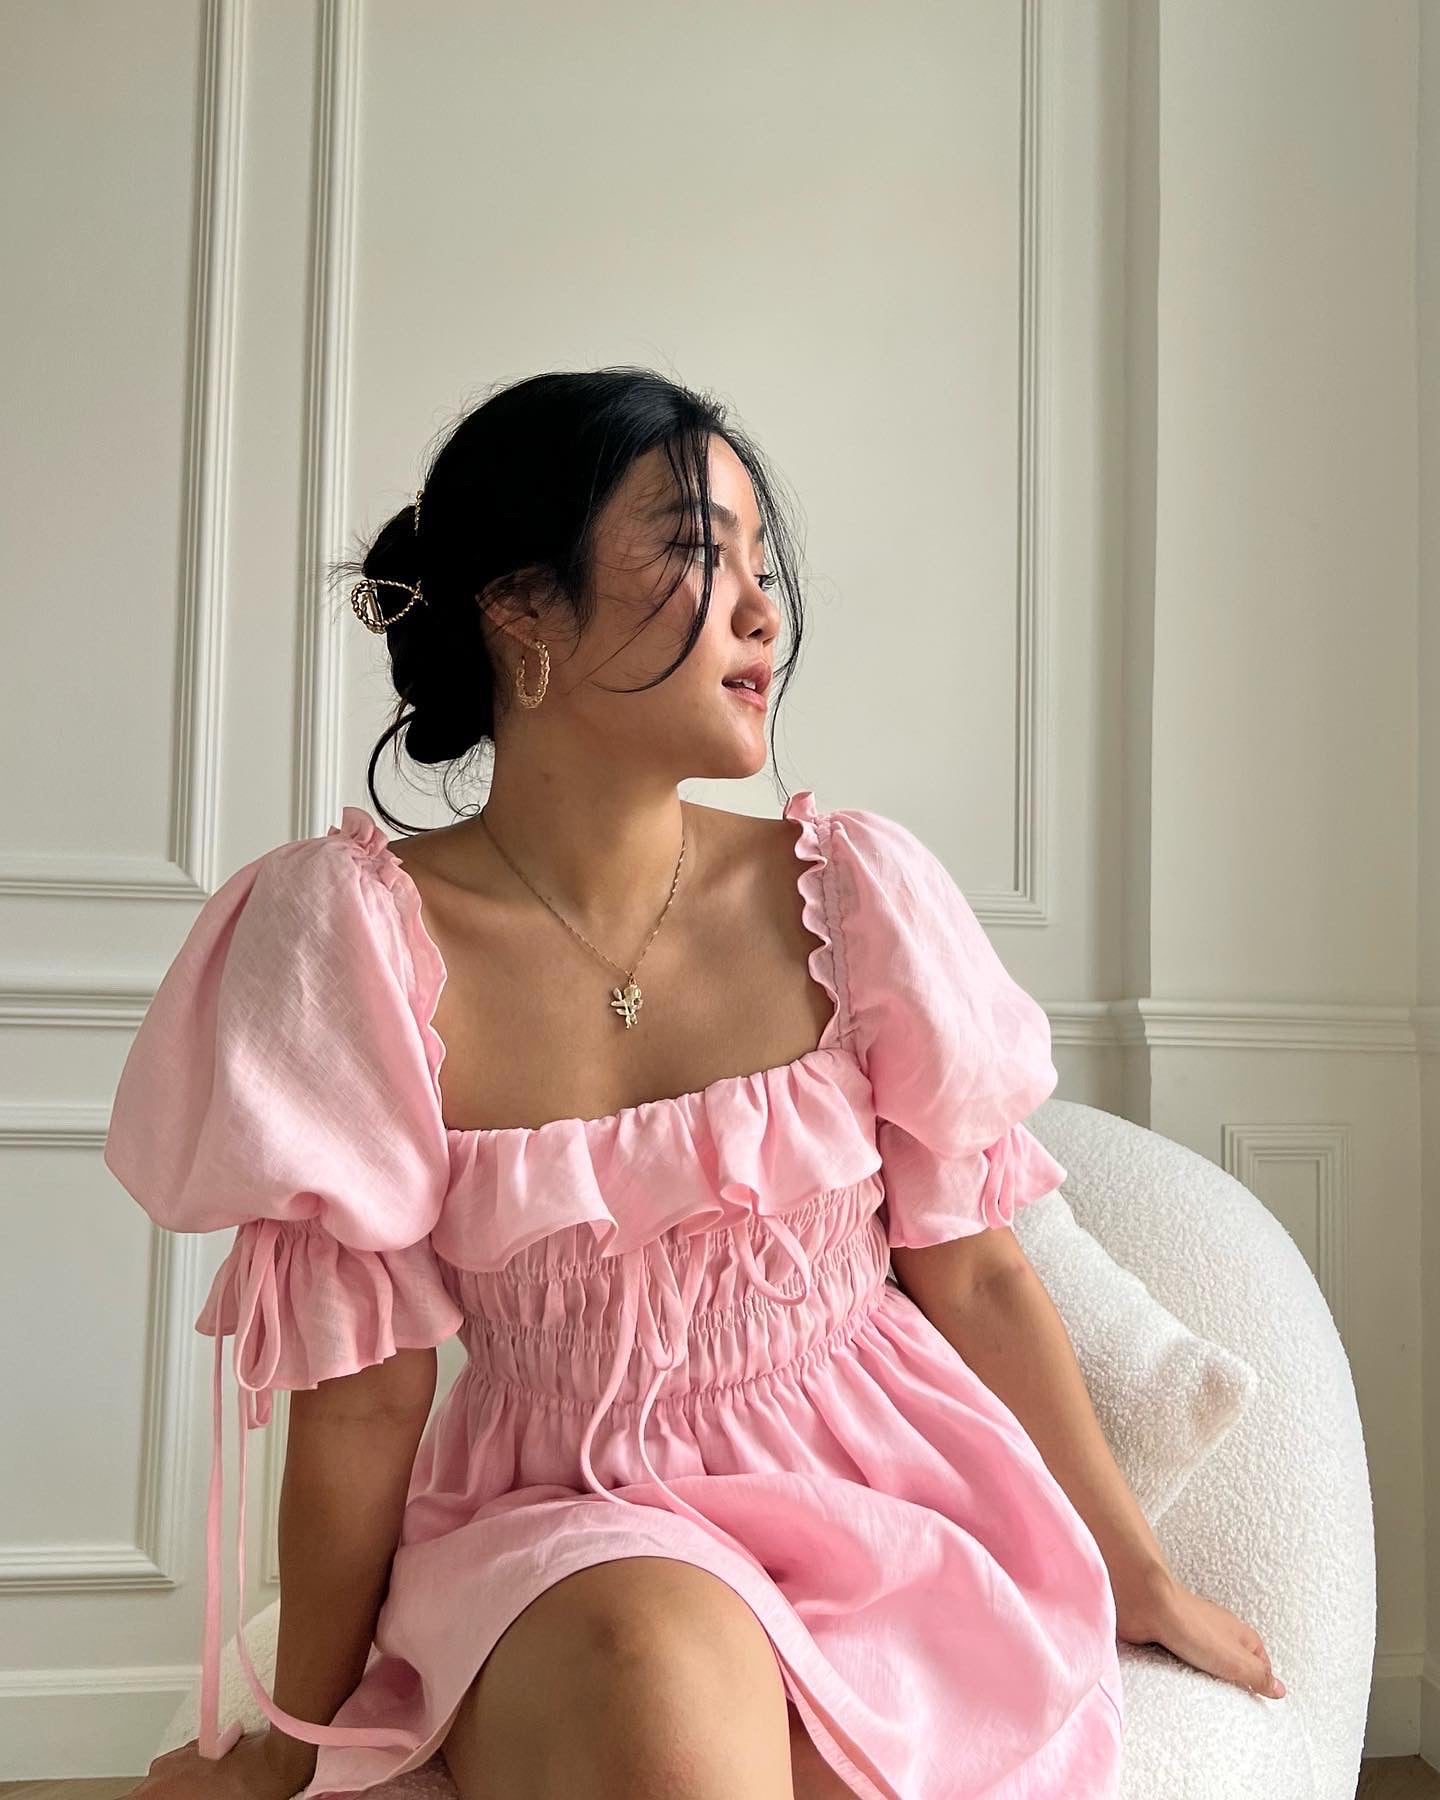 L’AUTOMNE MINI DRESS - RAVii - Pink - S - linen fabric